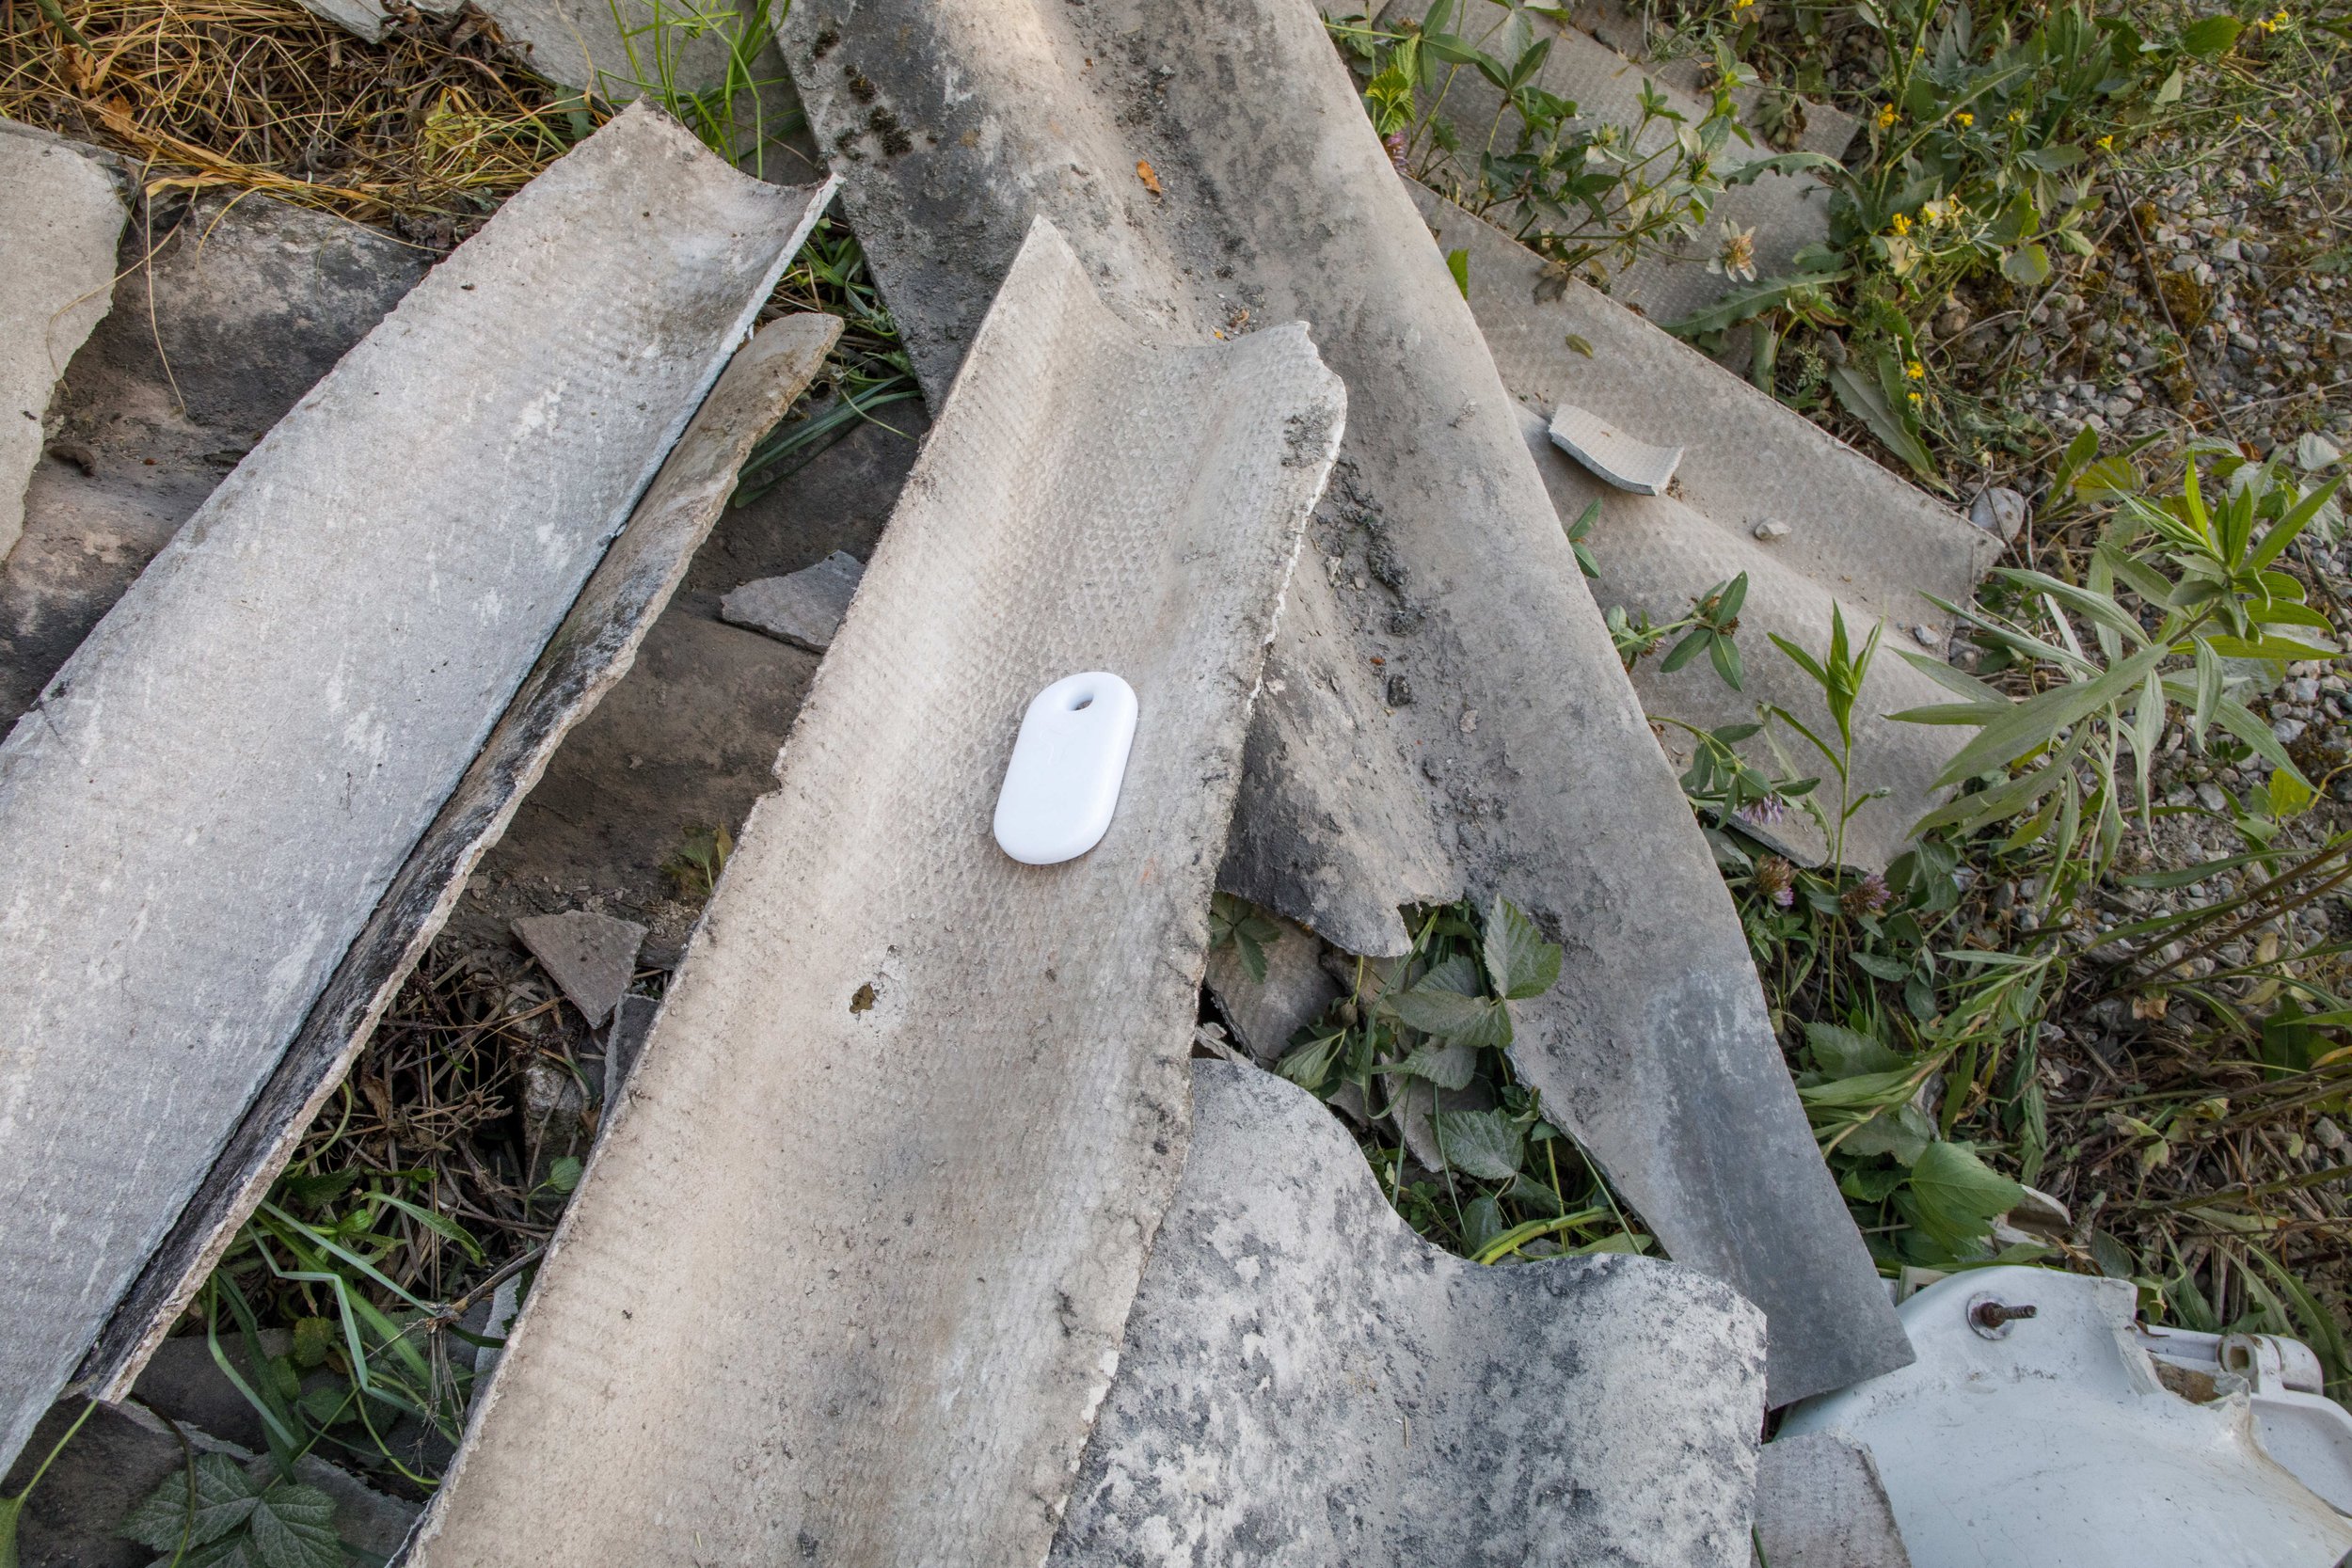  Poseben izziv je bila azbestna kritina, saj je lahko zelo škodljiva. Našli smo jo med sprehodom ob Savi. 